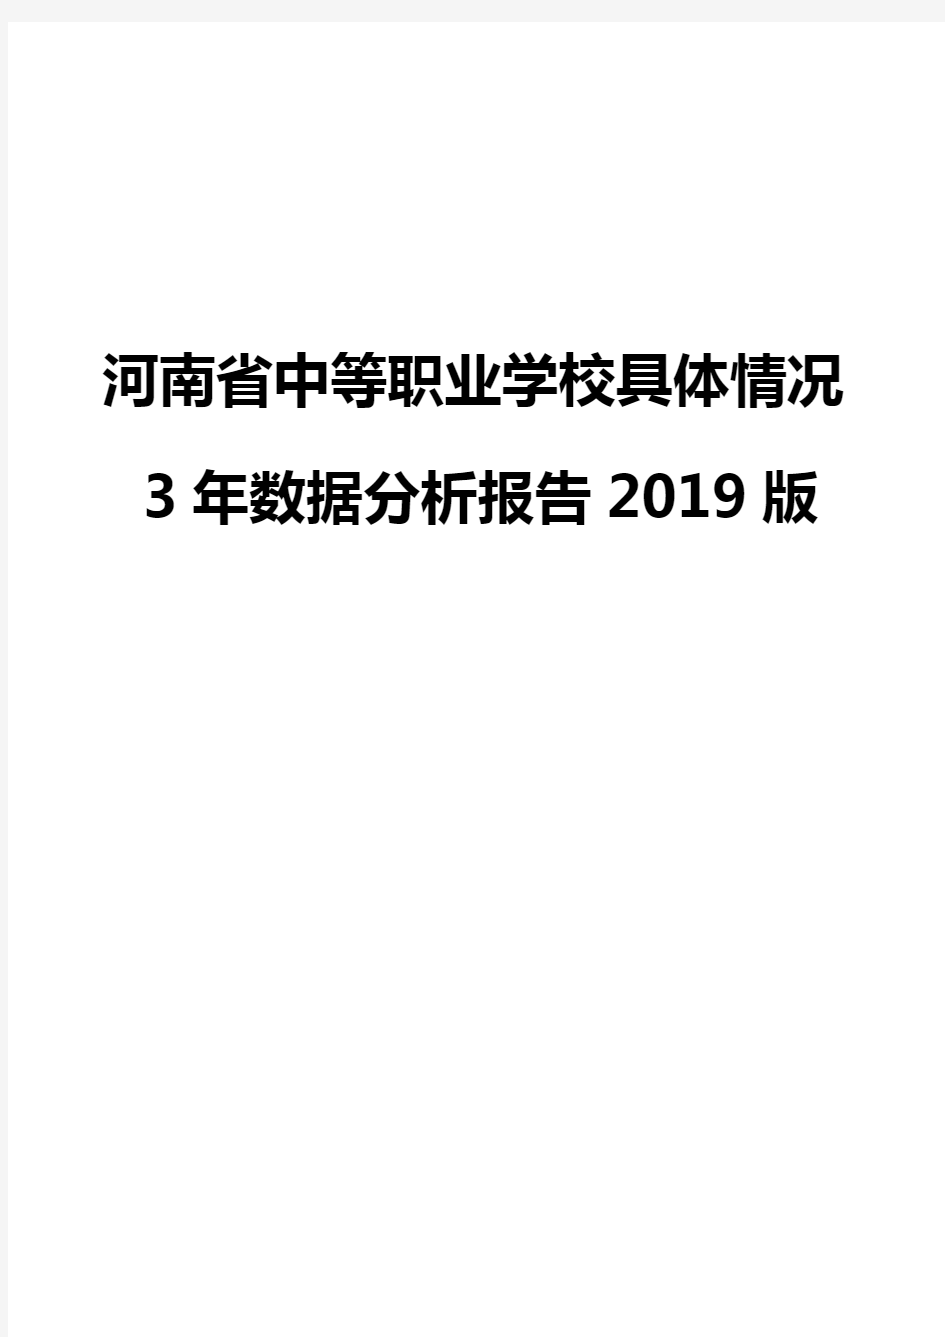 河南省中等职业学校具体情况3年数据分析报告2019版